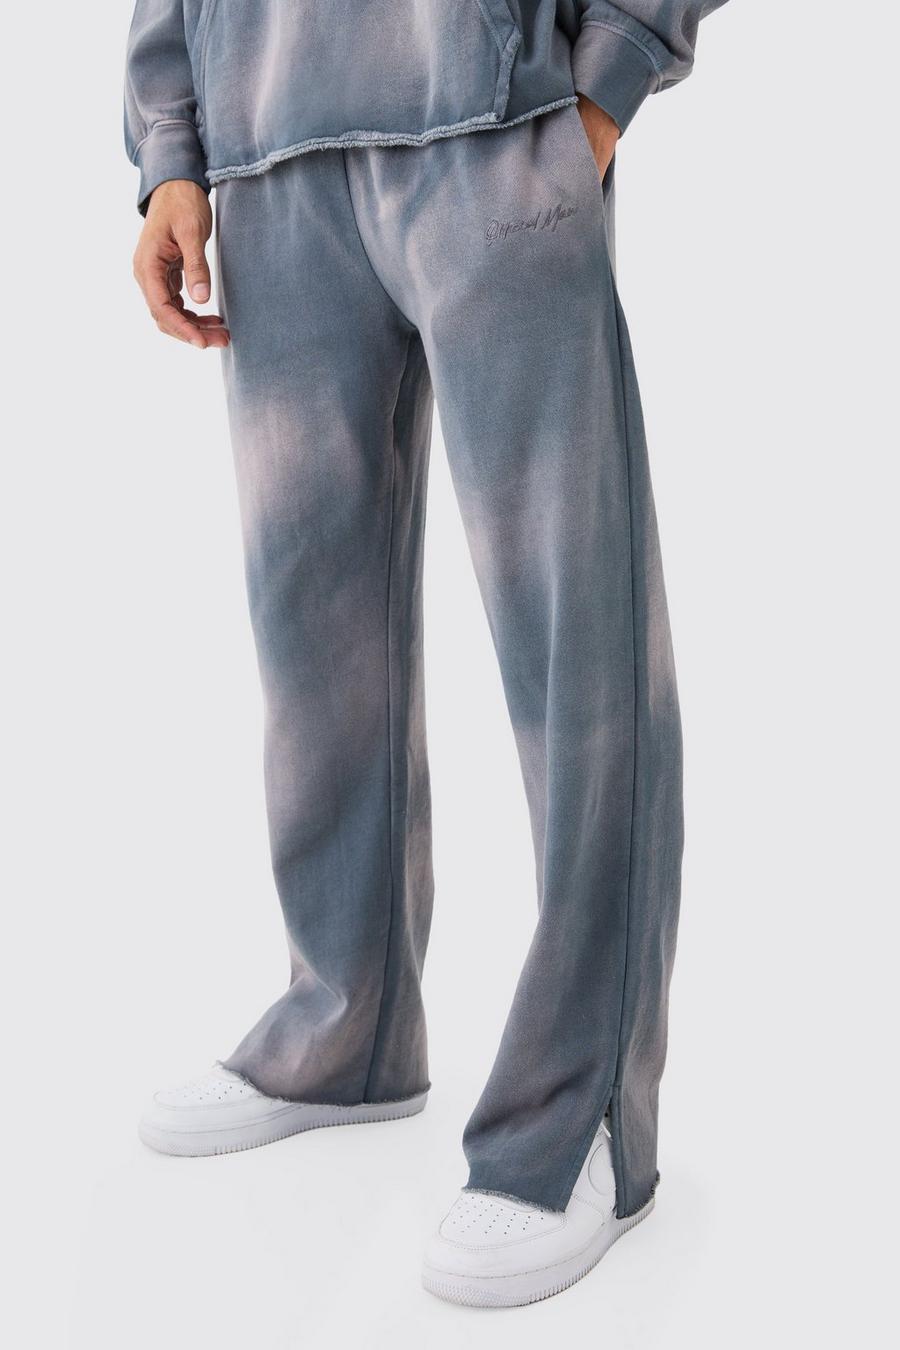 Pantalón deportivo MAN oversize desteñido con abertura en el bajo y bordado, Charcoal